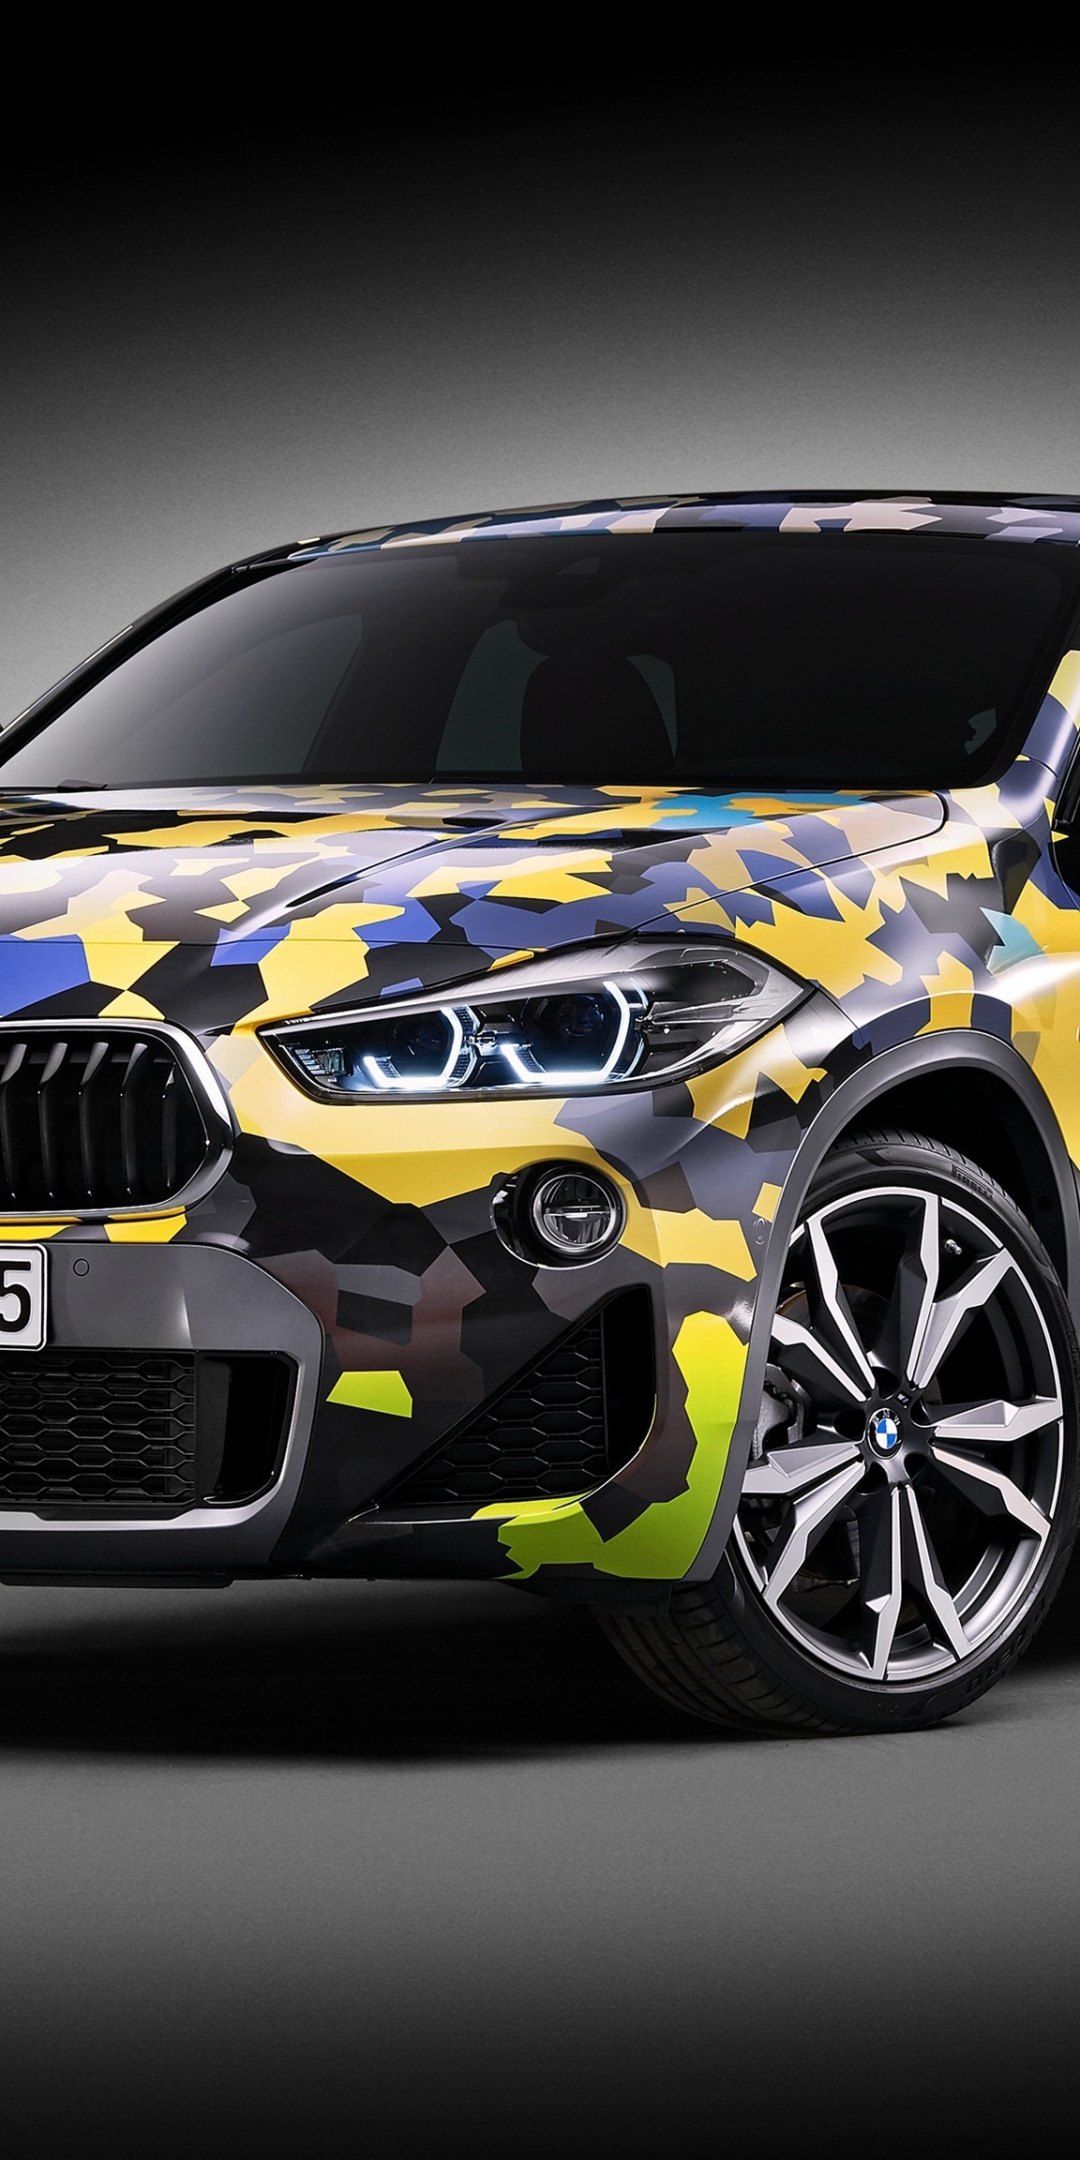 2018 BMW x2 Digital Camo, concept car, 1080x2160 wallpaper